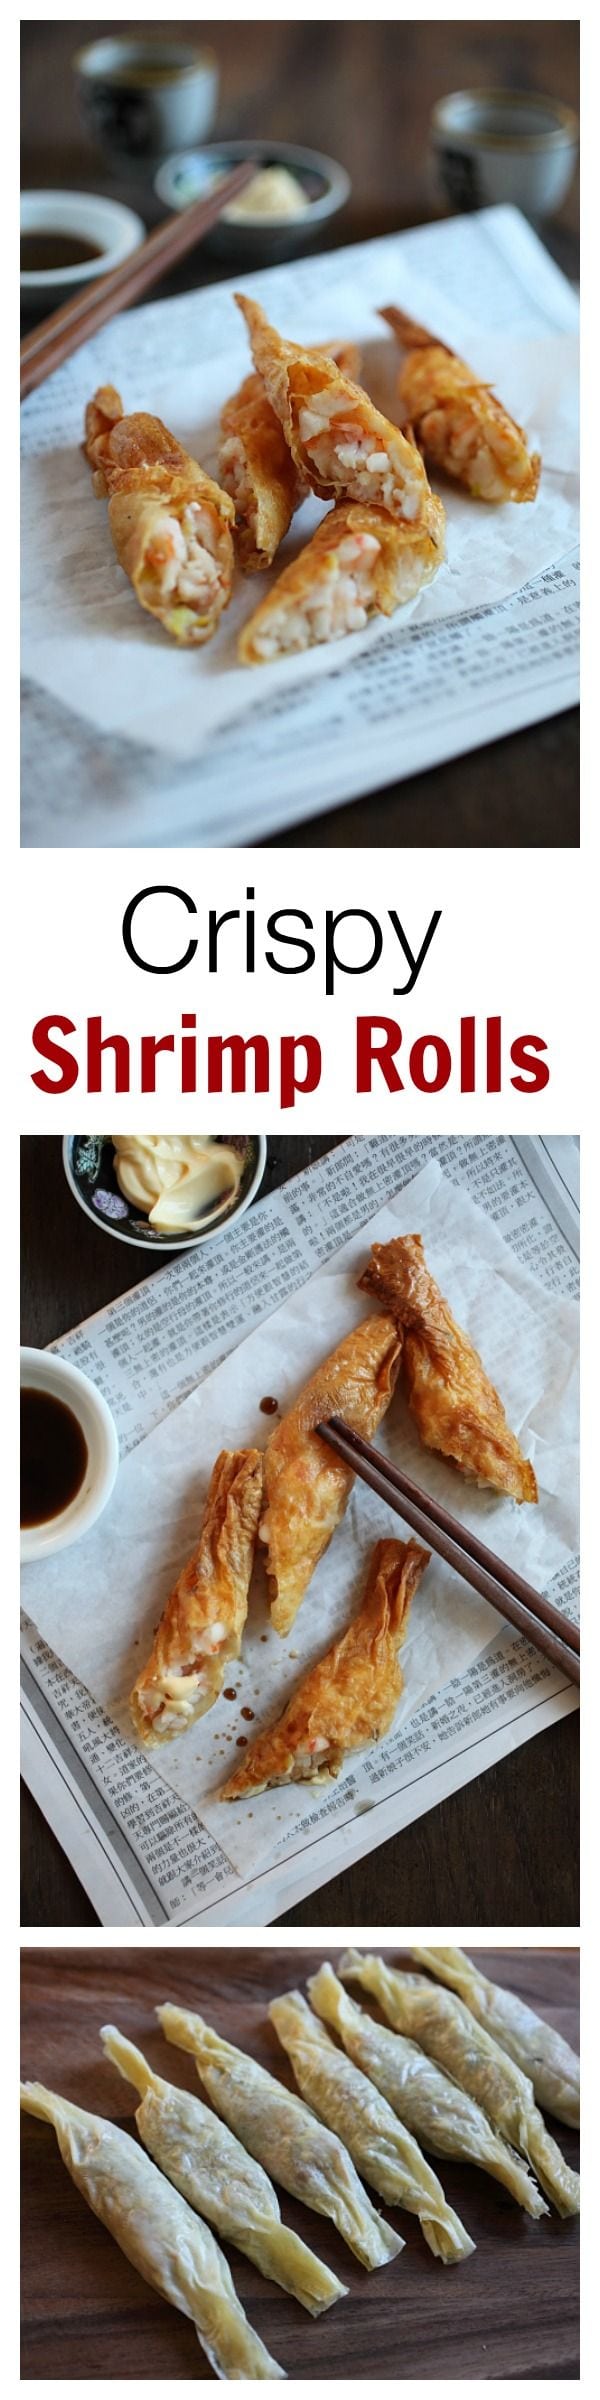 Crispy Shrimp Rolls - best dim sum ever!! Crispy, delicious shrimp rolls that you can make at home, so easy!! | rasamalaysia.com